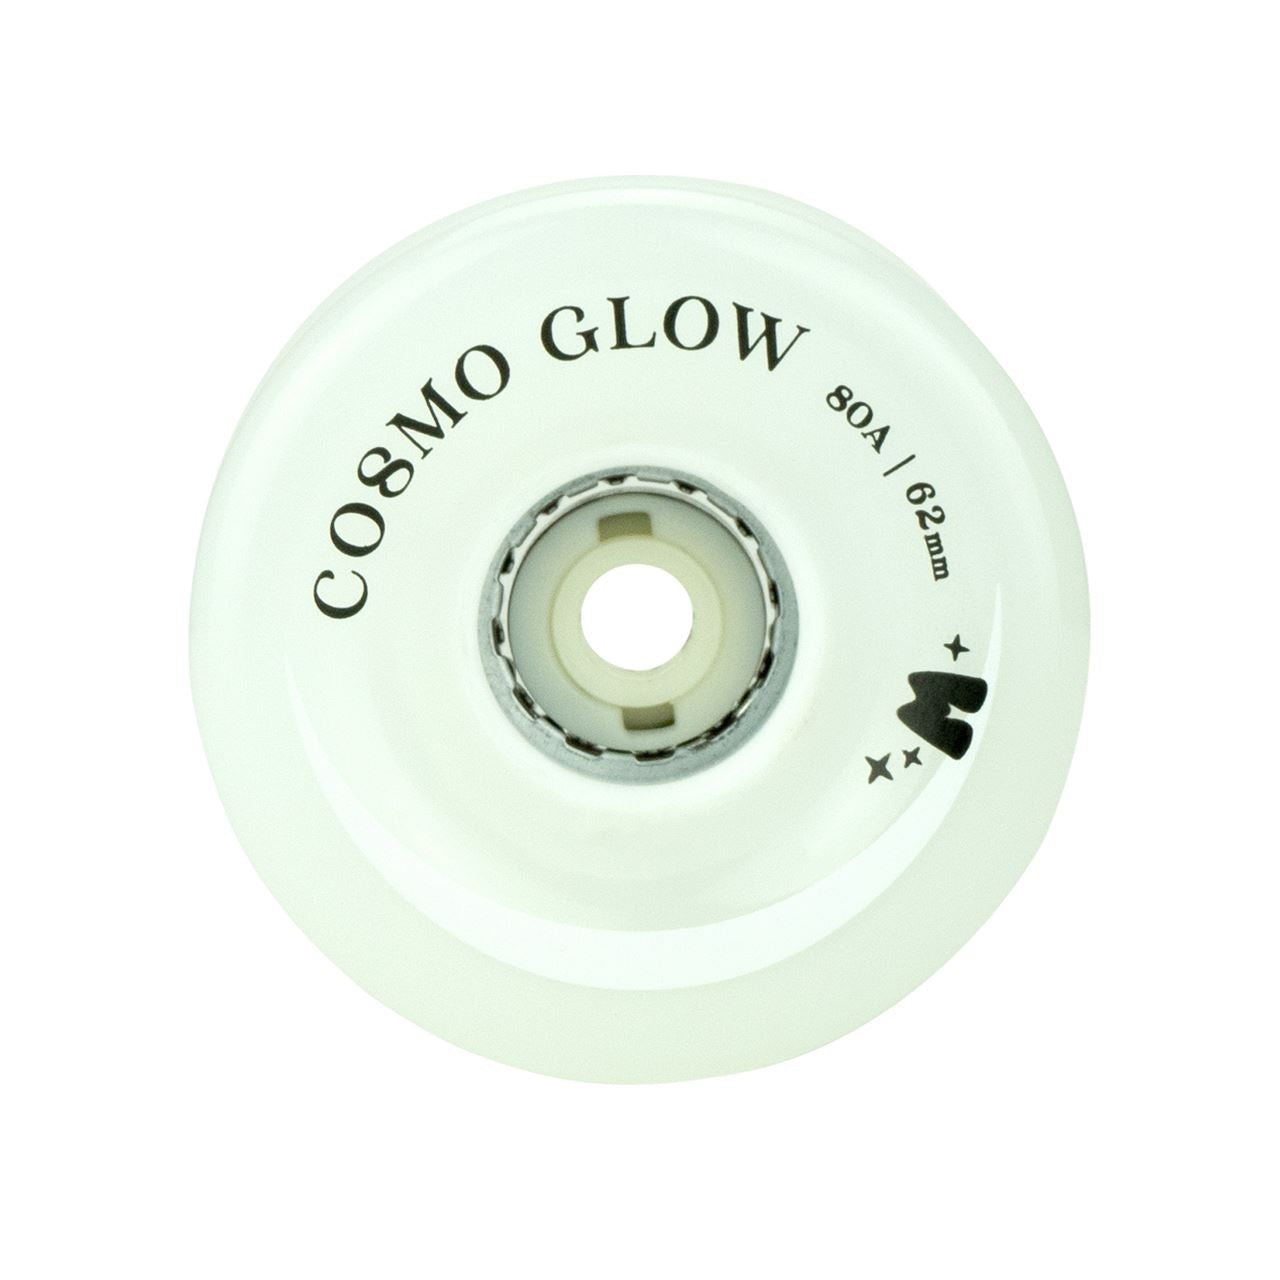 Moxi Cosmo Glow Roues de patins à roulettes lumineuses à LED Blanc Rain Glow 62 mm 80a - Lot de 4